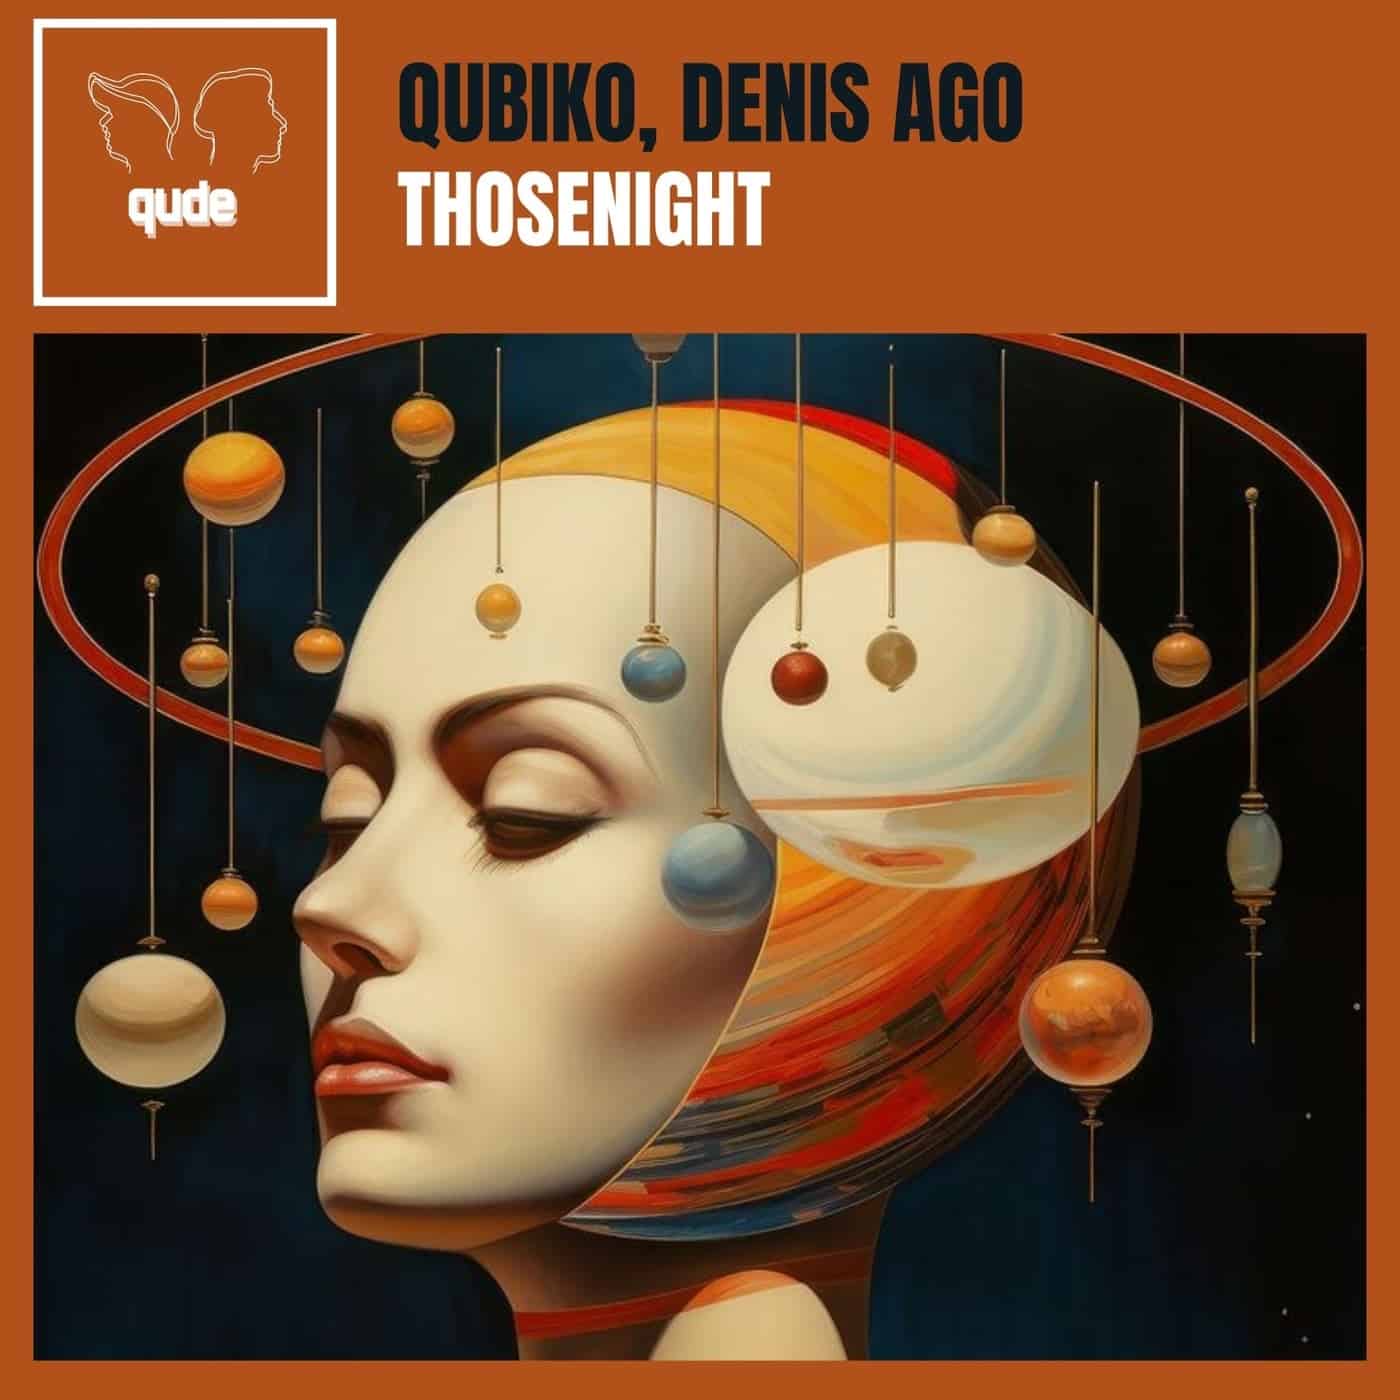 image cover: Qubiko, Denis Ago - Thosenight on qude